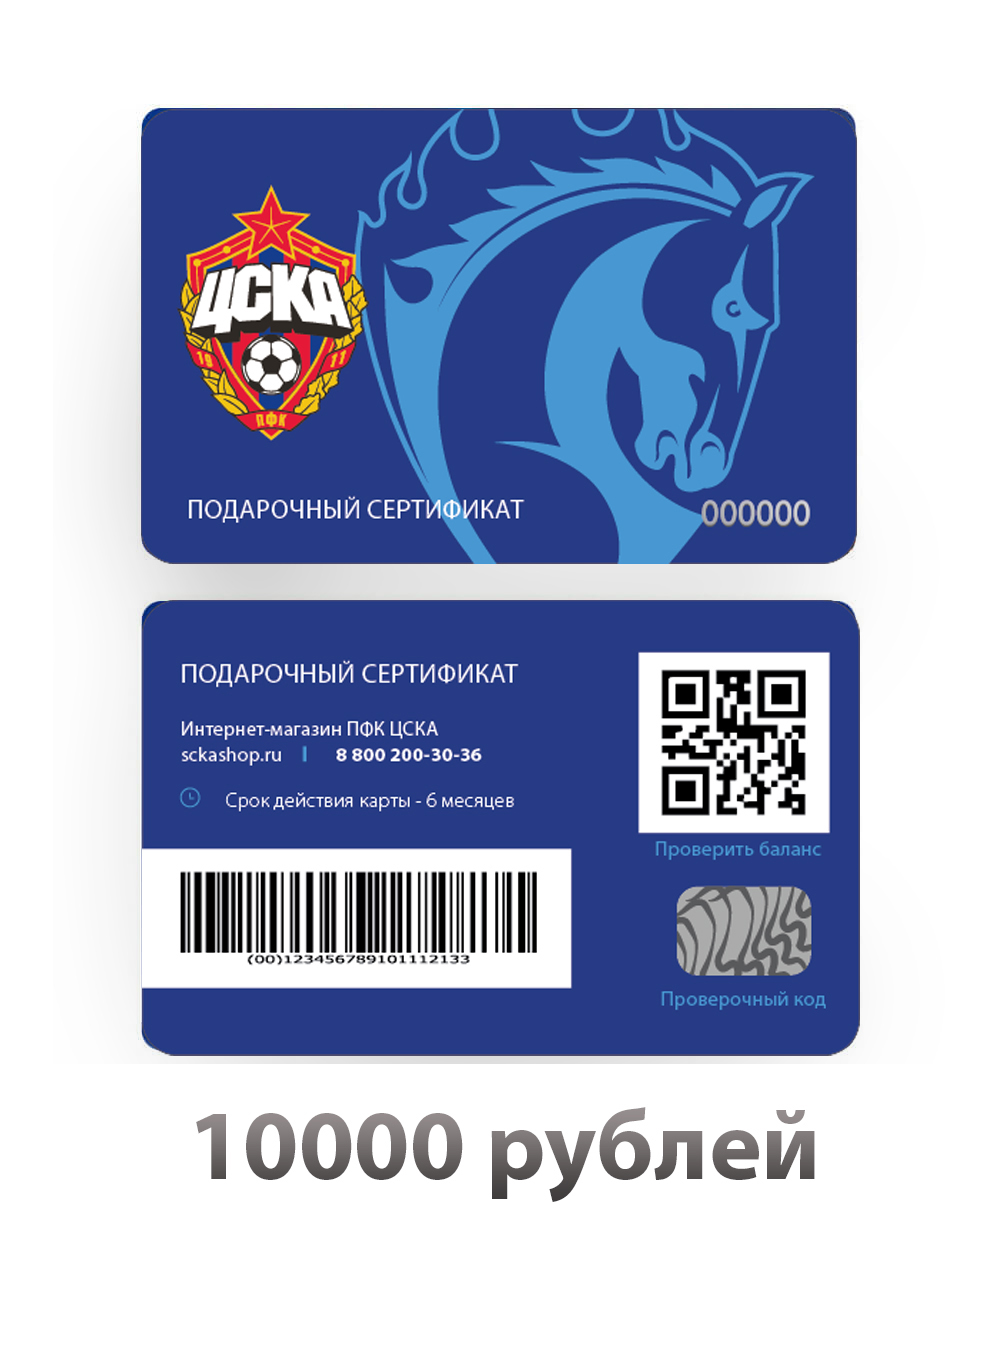 Подарочный сертификат на 10000 рублей (Электронный сертификат на 10000 рублей) от Cskashop